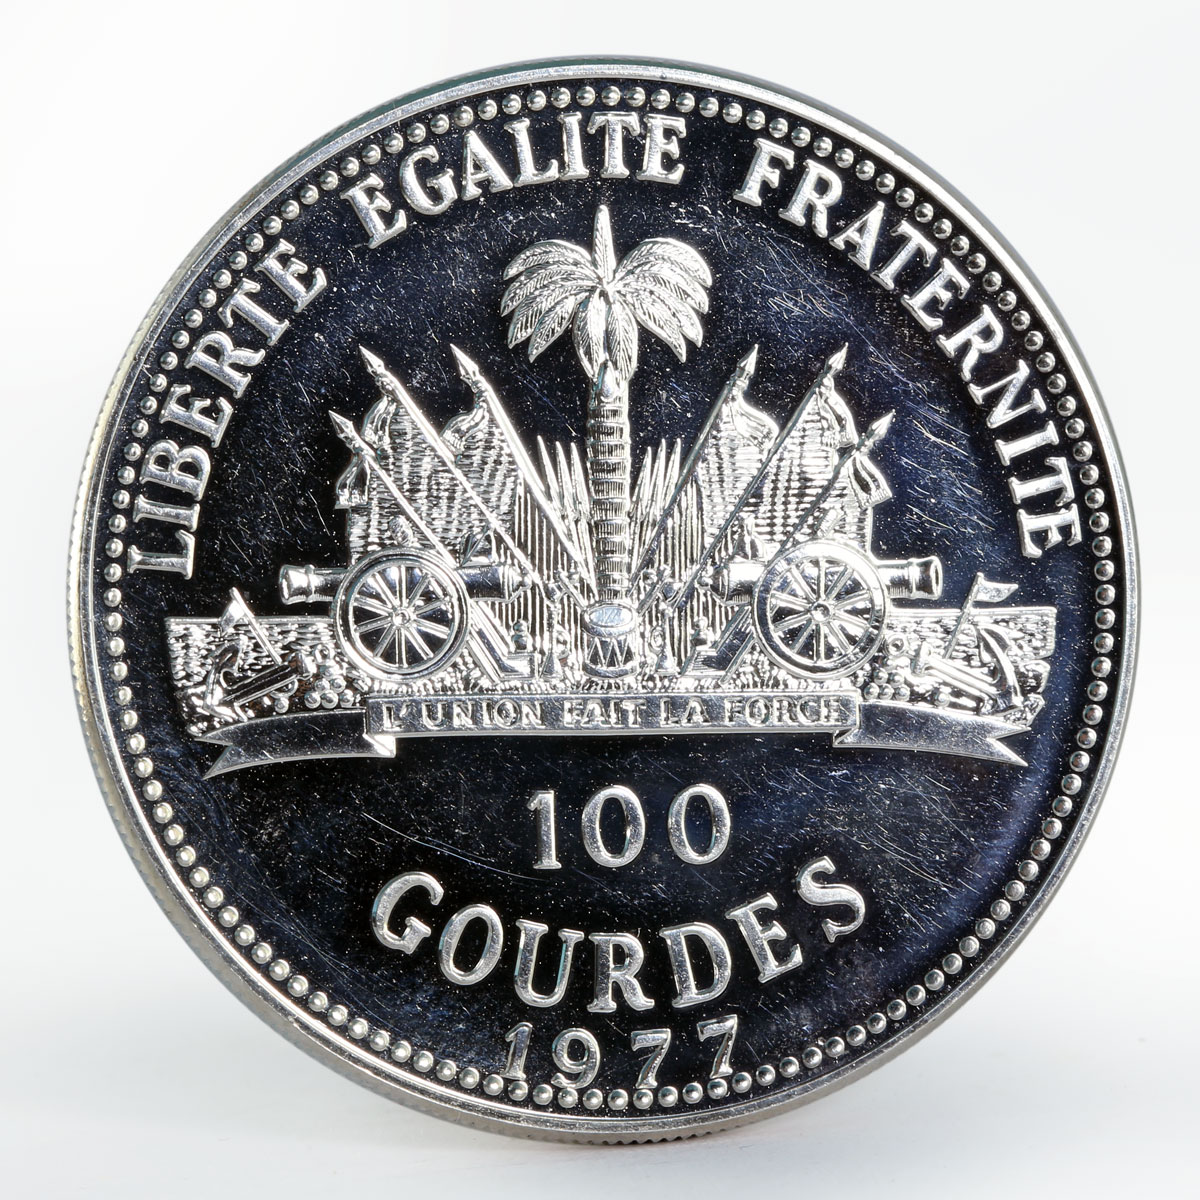 Haiti 100 gourdes 20th Anniversary of the European Market proof silver coin 1977